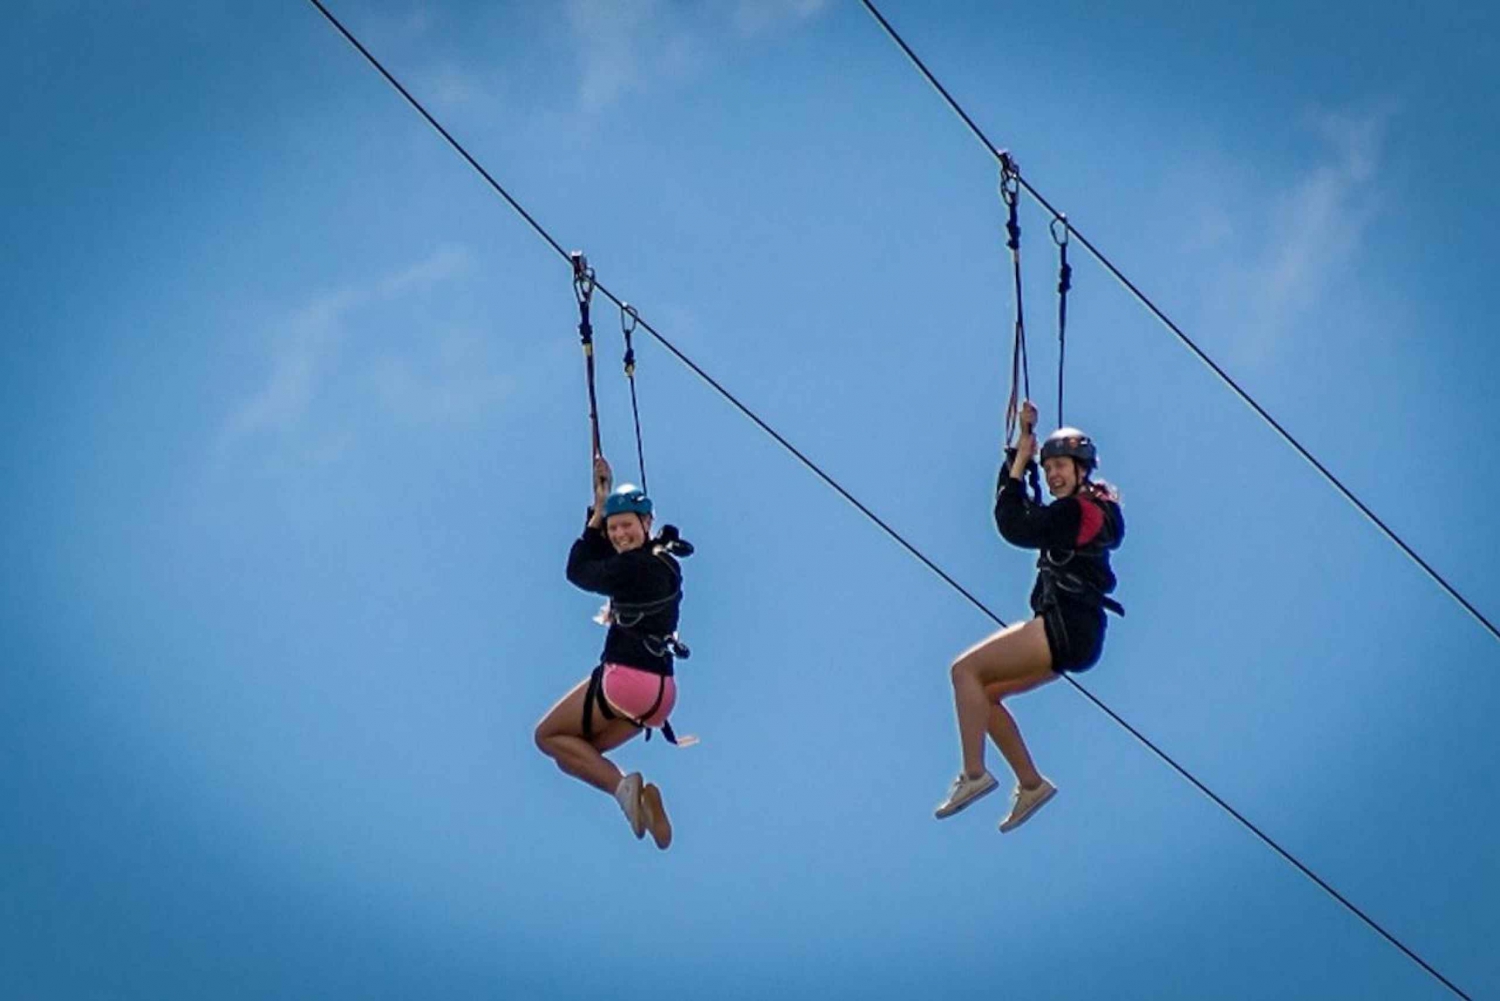 Addo nasjonalpark: Addo Zip Line og Giant Swing